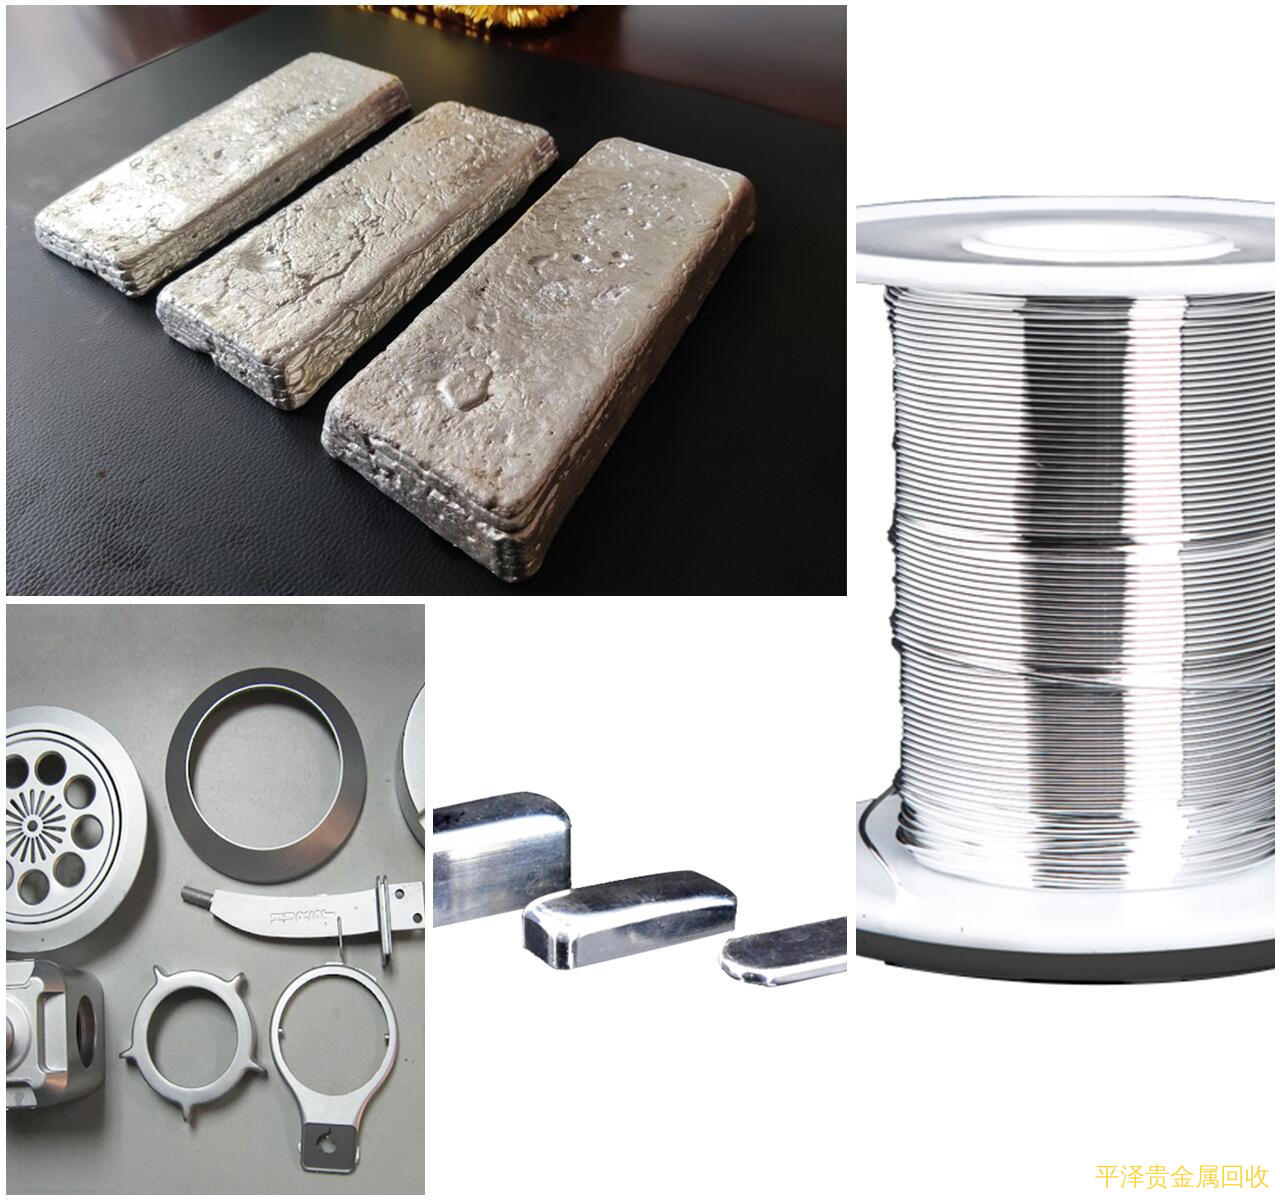 强力推荐废银浆罐靠得住精炼厂家特色!，浅显分析镀银件的银提取方法